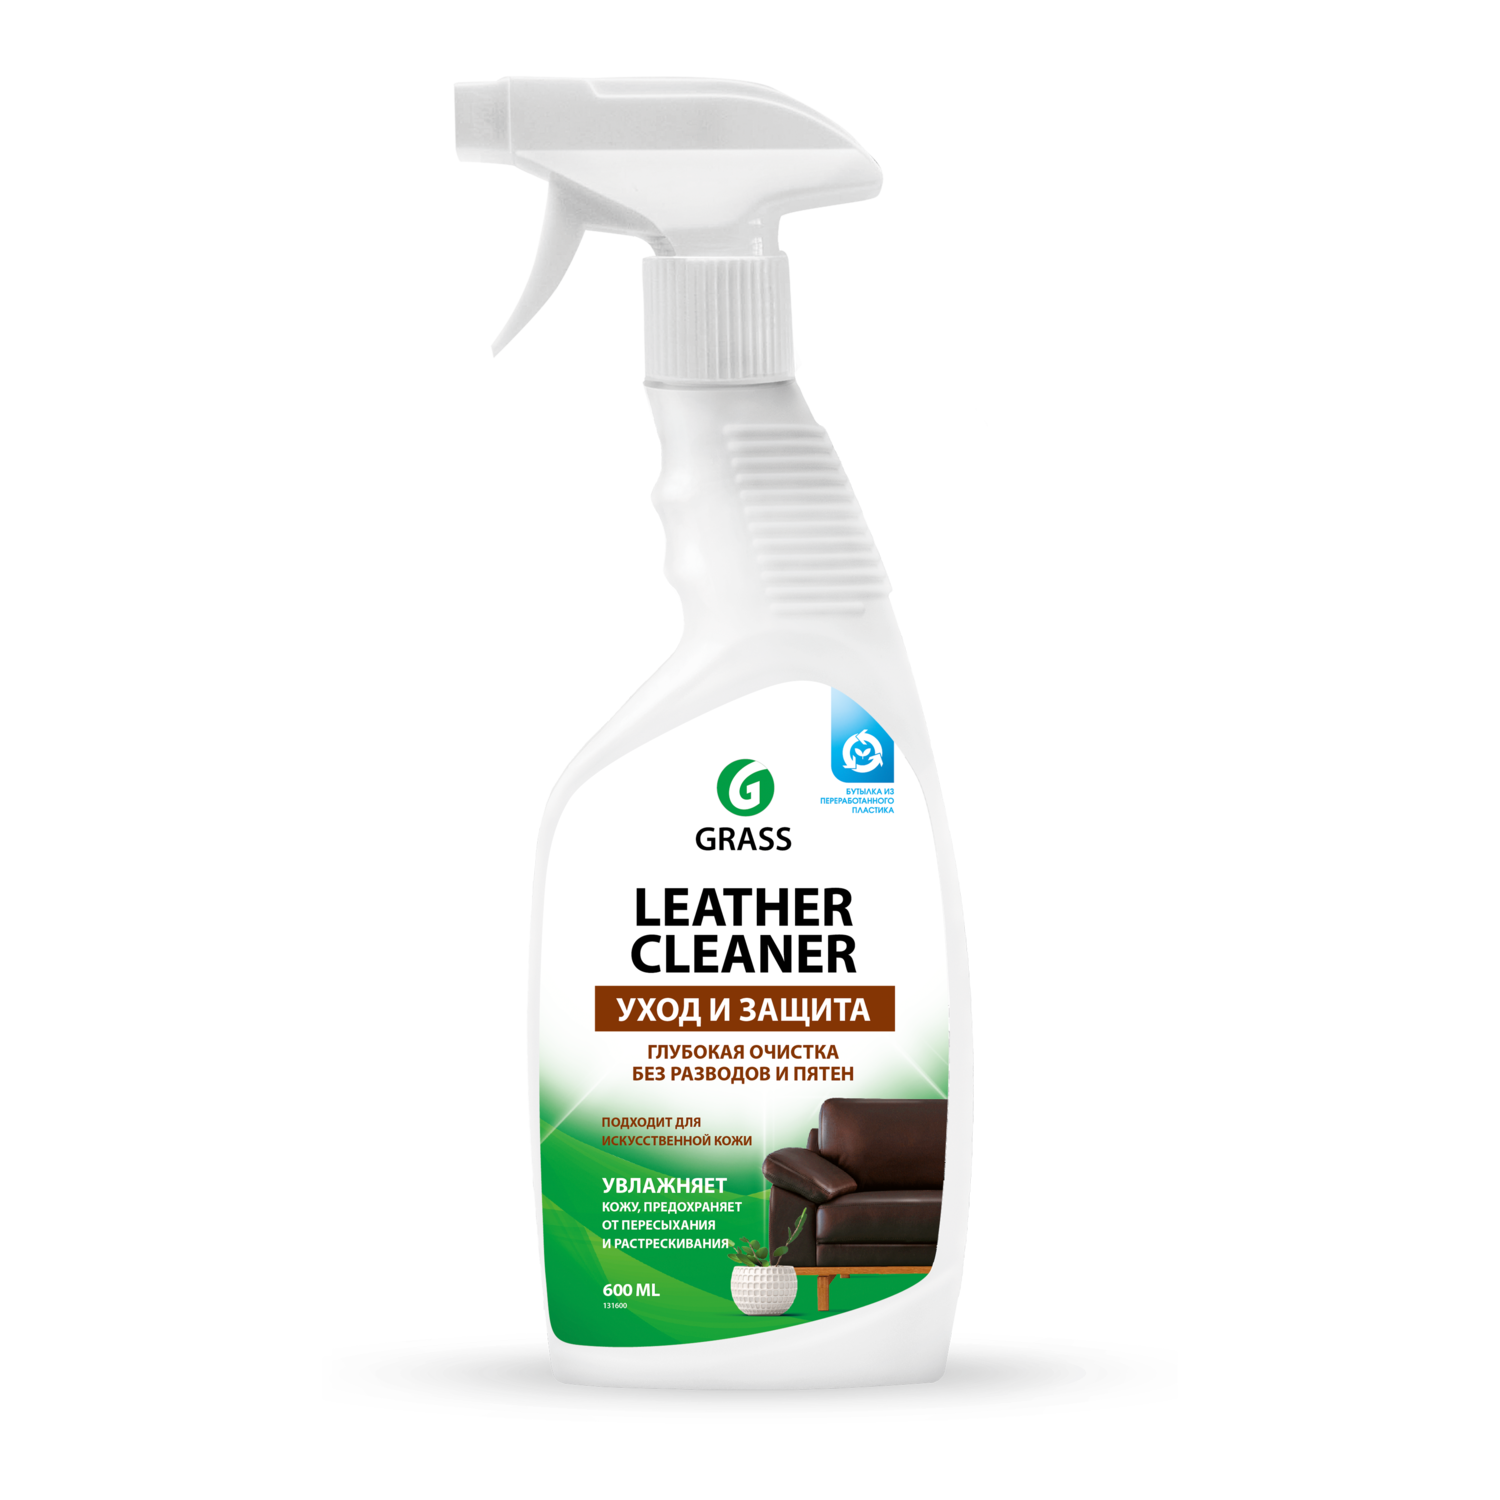 Крем-кондиционер GraSS для очистки изделий из кожи Leather Cleaner 600 мл - фото 1